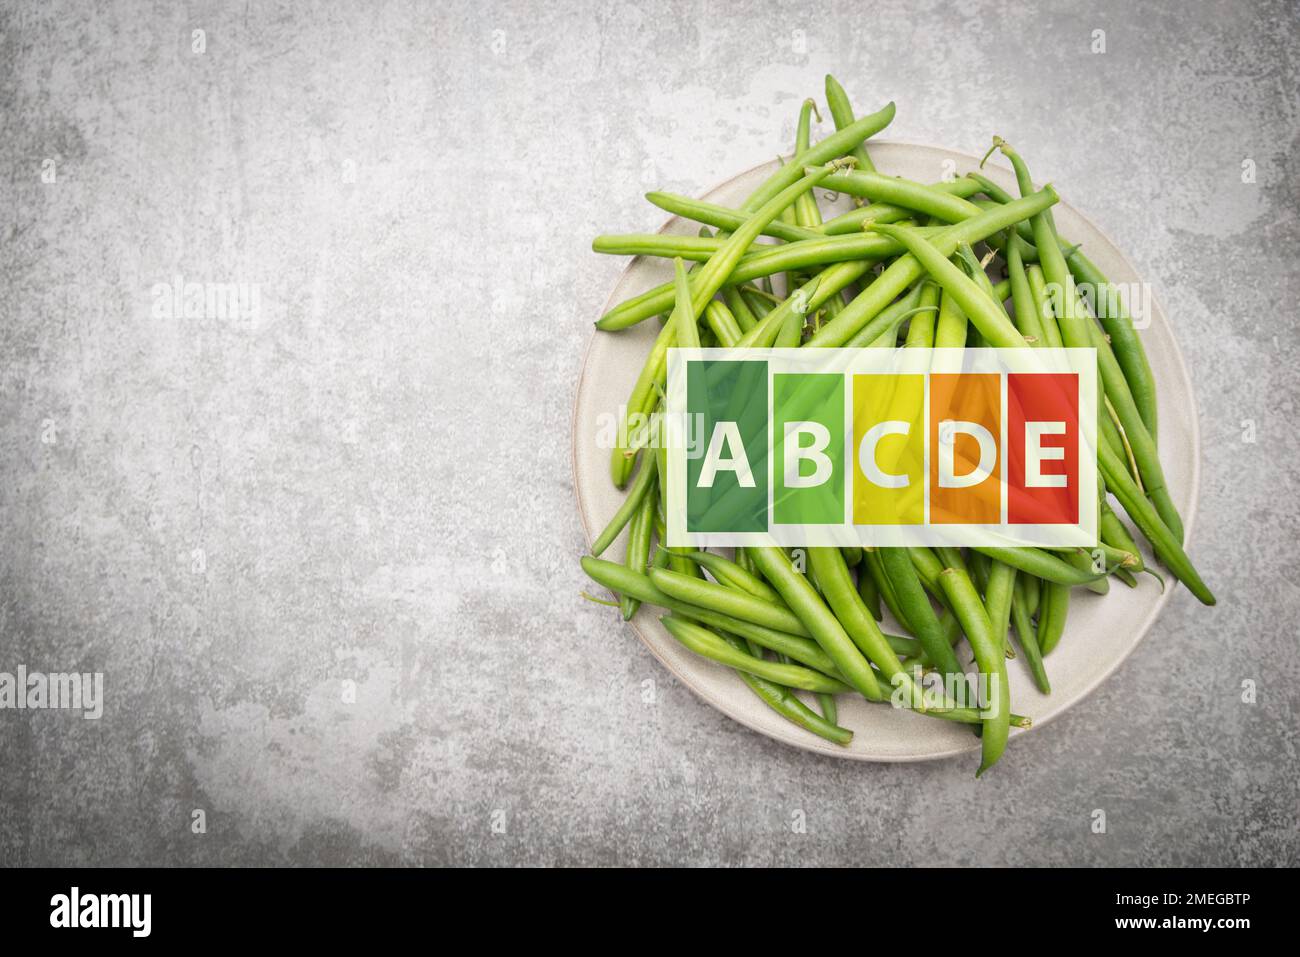 Grüne frische Bohnen auf einem Teller, Gemüse, gesunde Lebensmittel, hohe Nährwerte Stockfoto